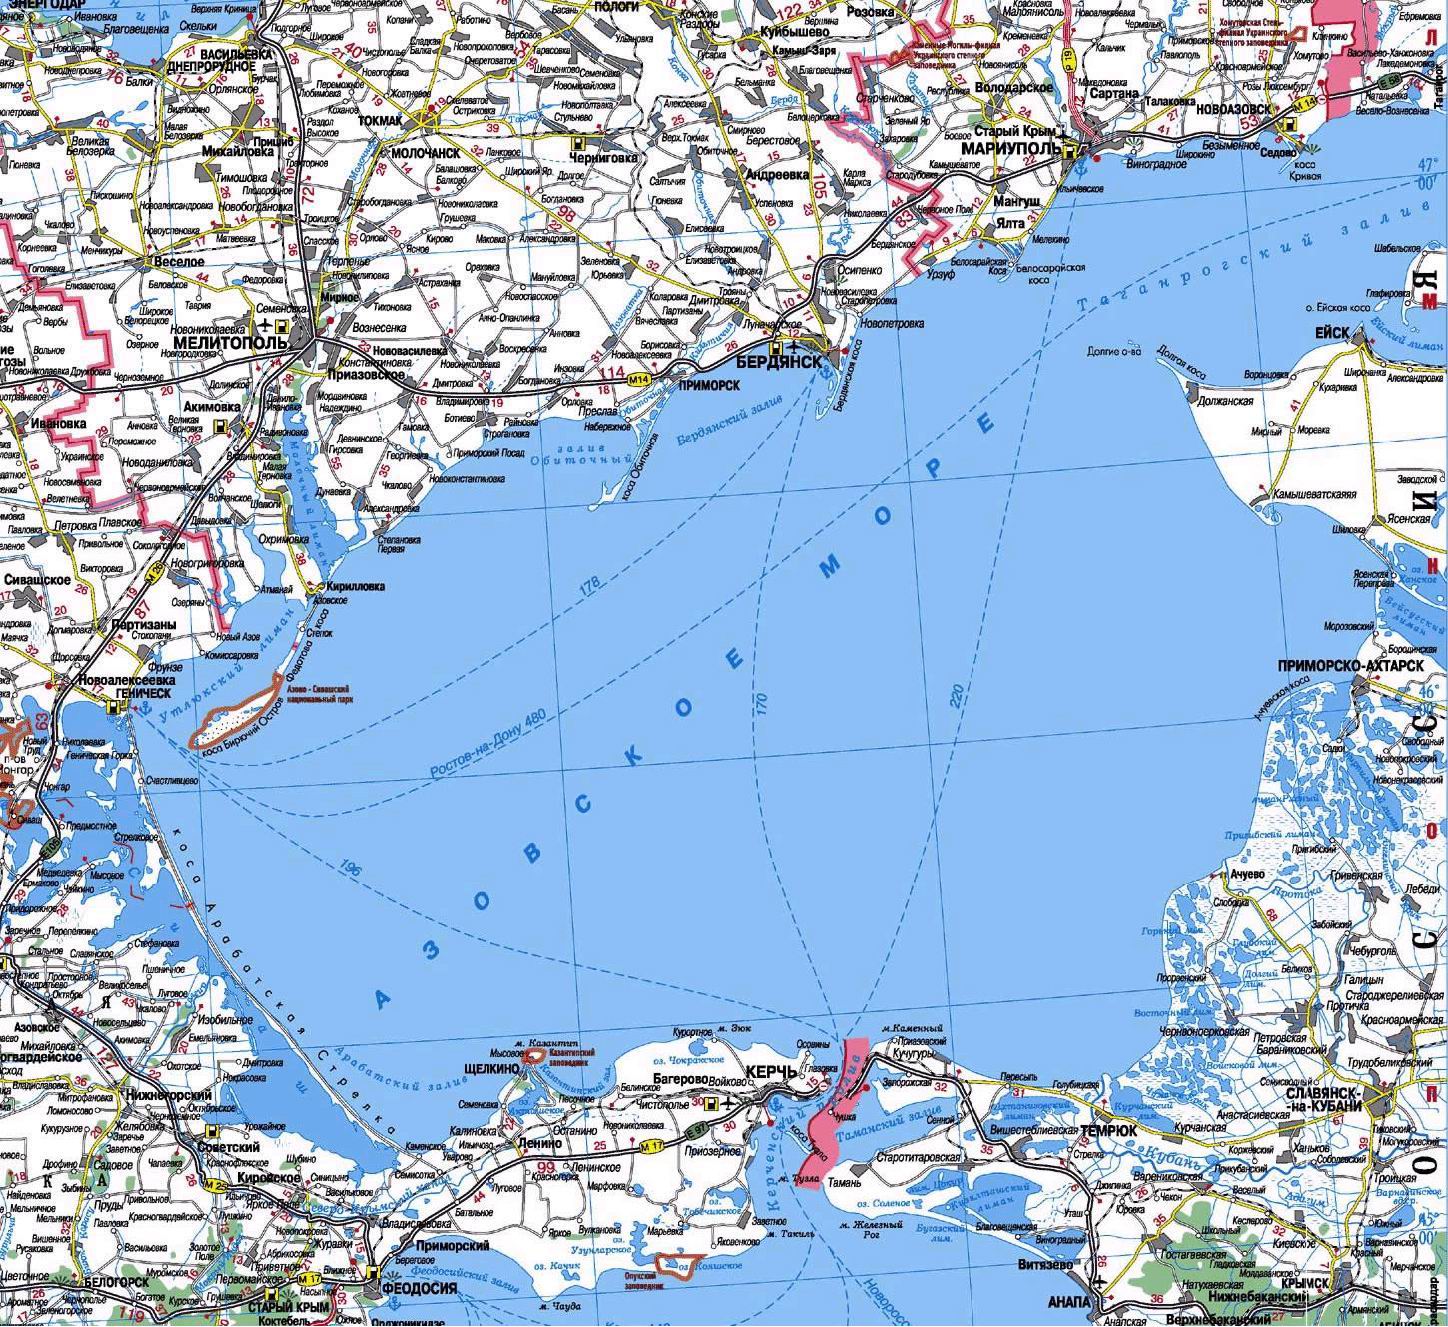 Карта Азовского моря